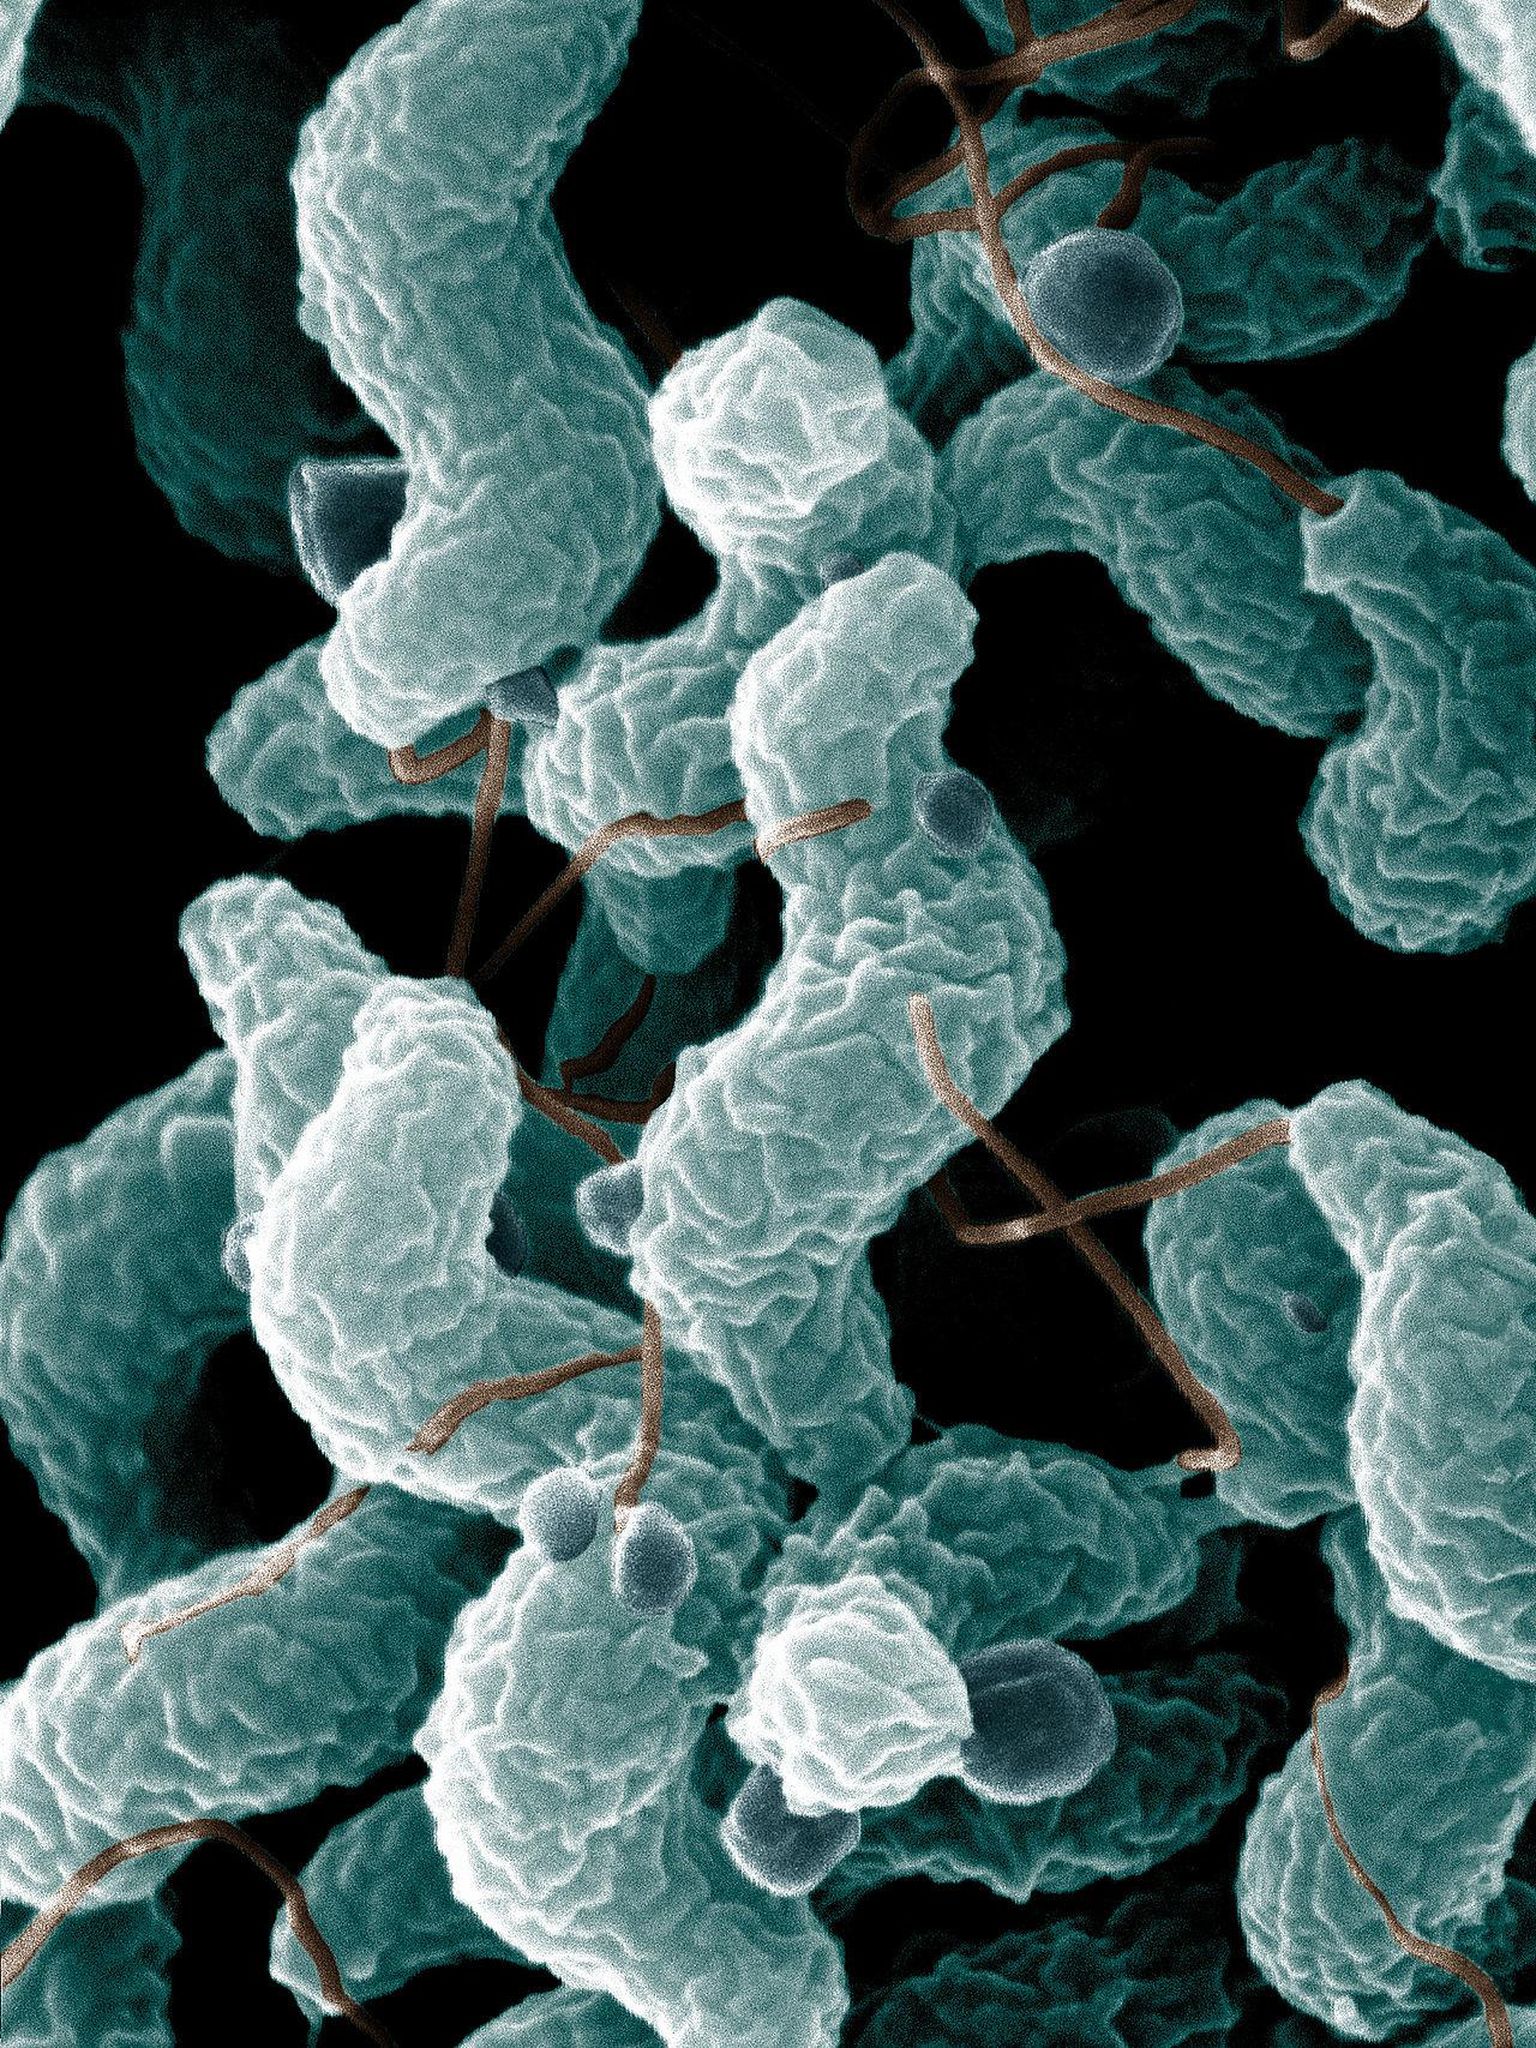 Oksendamise ja kõhulahtisusega kulgeva kampülobakterenteriidi tekitaja on Campylobacter jejuni. See ka loomadel esinev haigustekitaja võib muutuda antibiootikumide toime suhtes allumatuks.